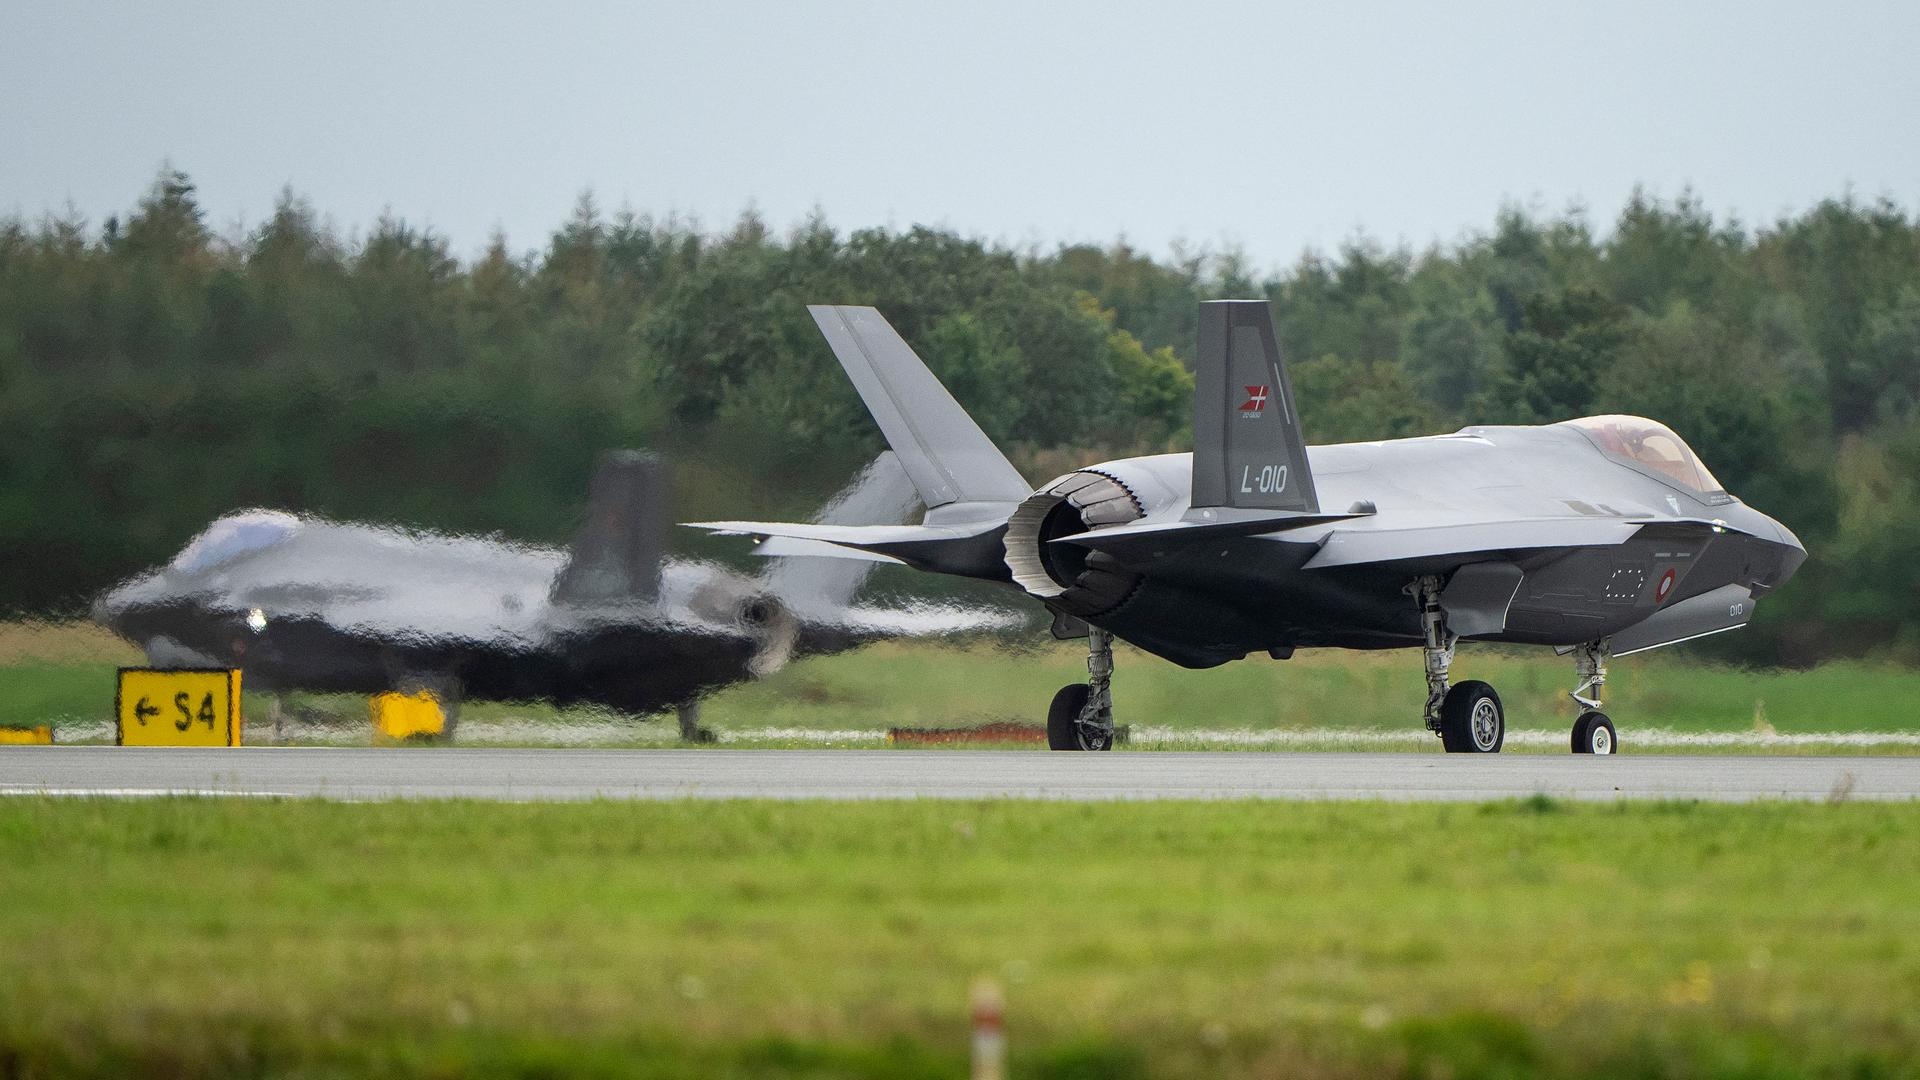 Zu sehen sind zwei F-35 Kampfjets, die die USA an Dänemark geliefert haben.